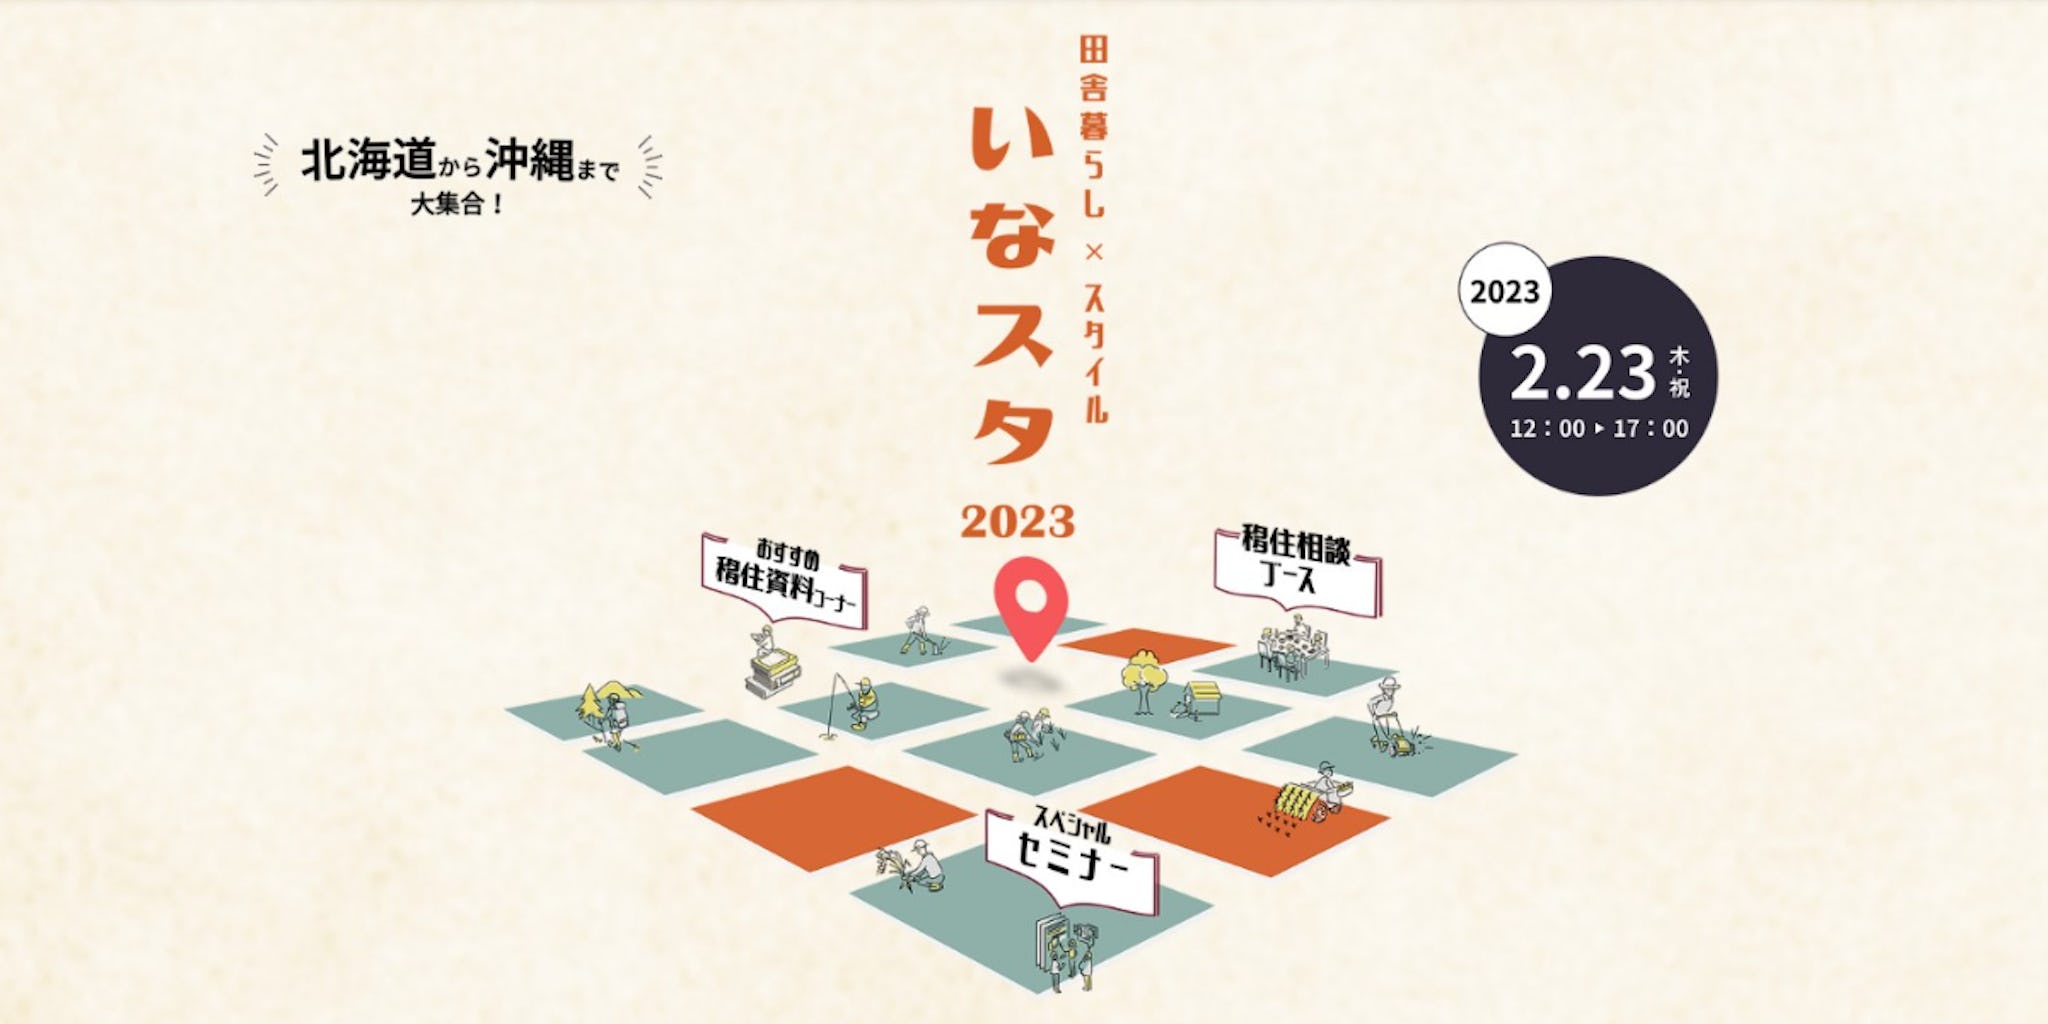 【大阪】移住相談イベント「いなスタ2023」に出展します！　～2/23（木・祝）～